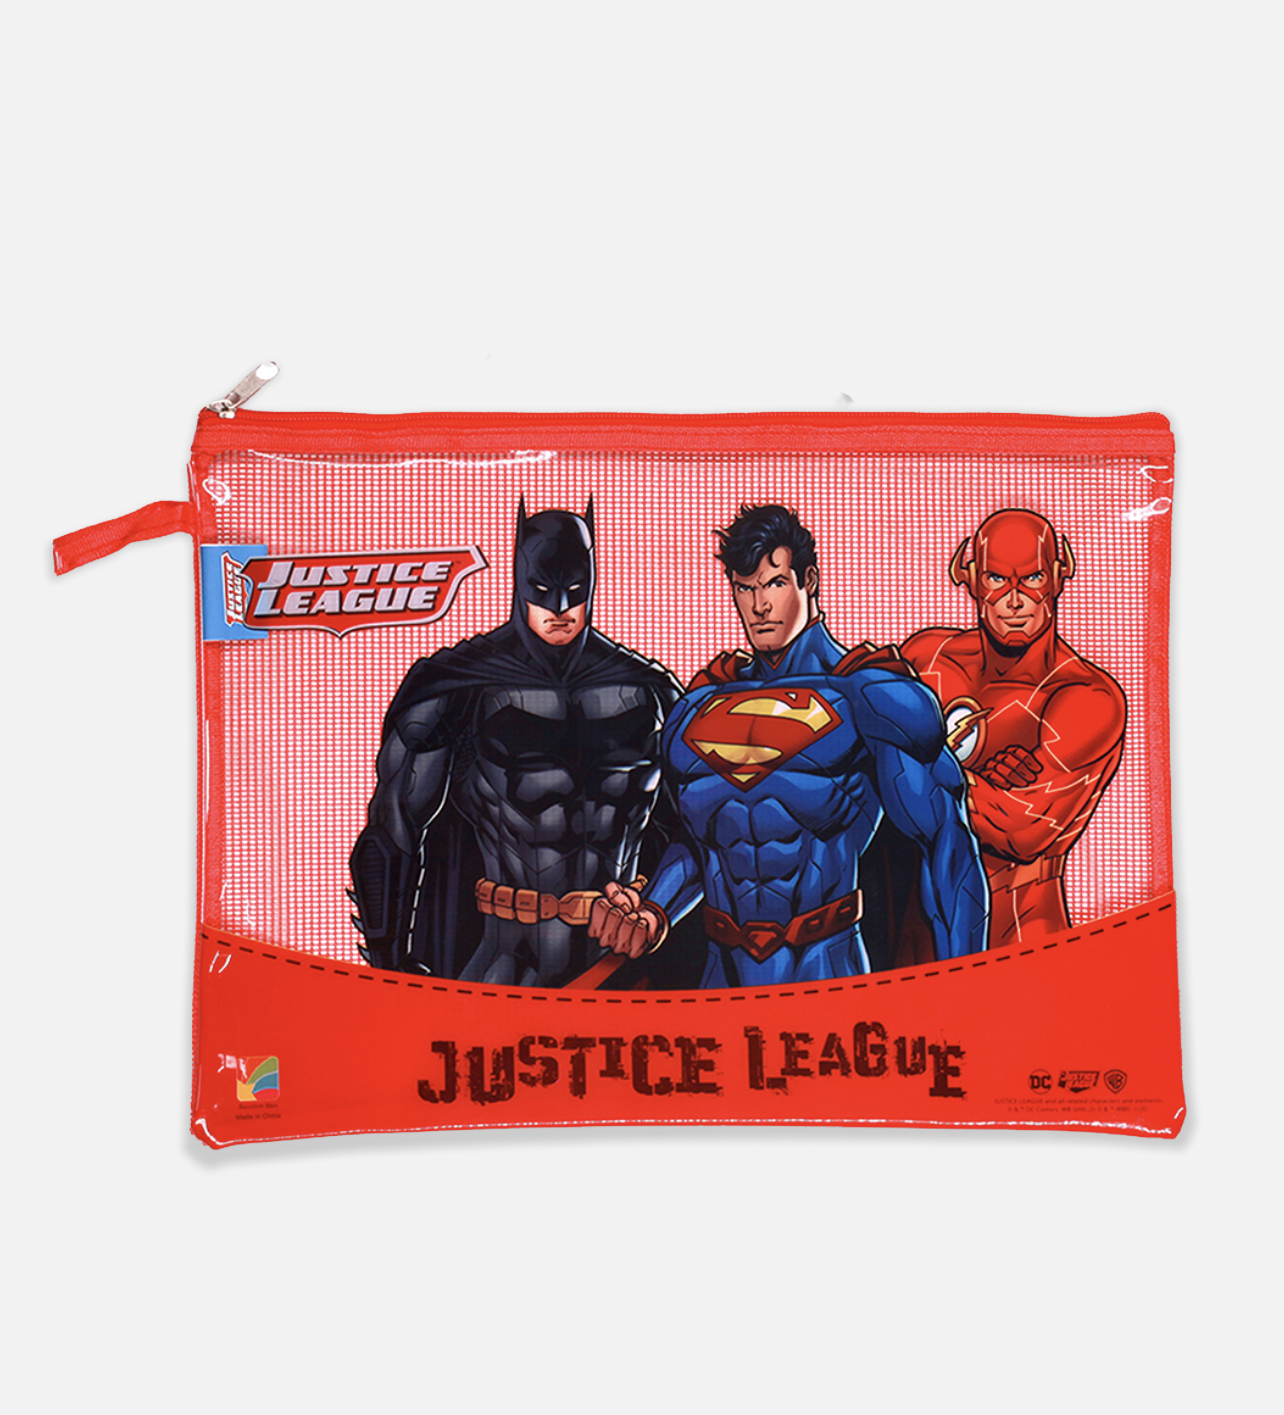 Justice league - file